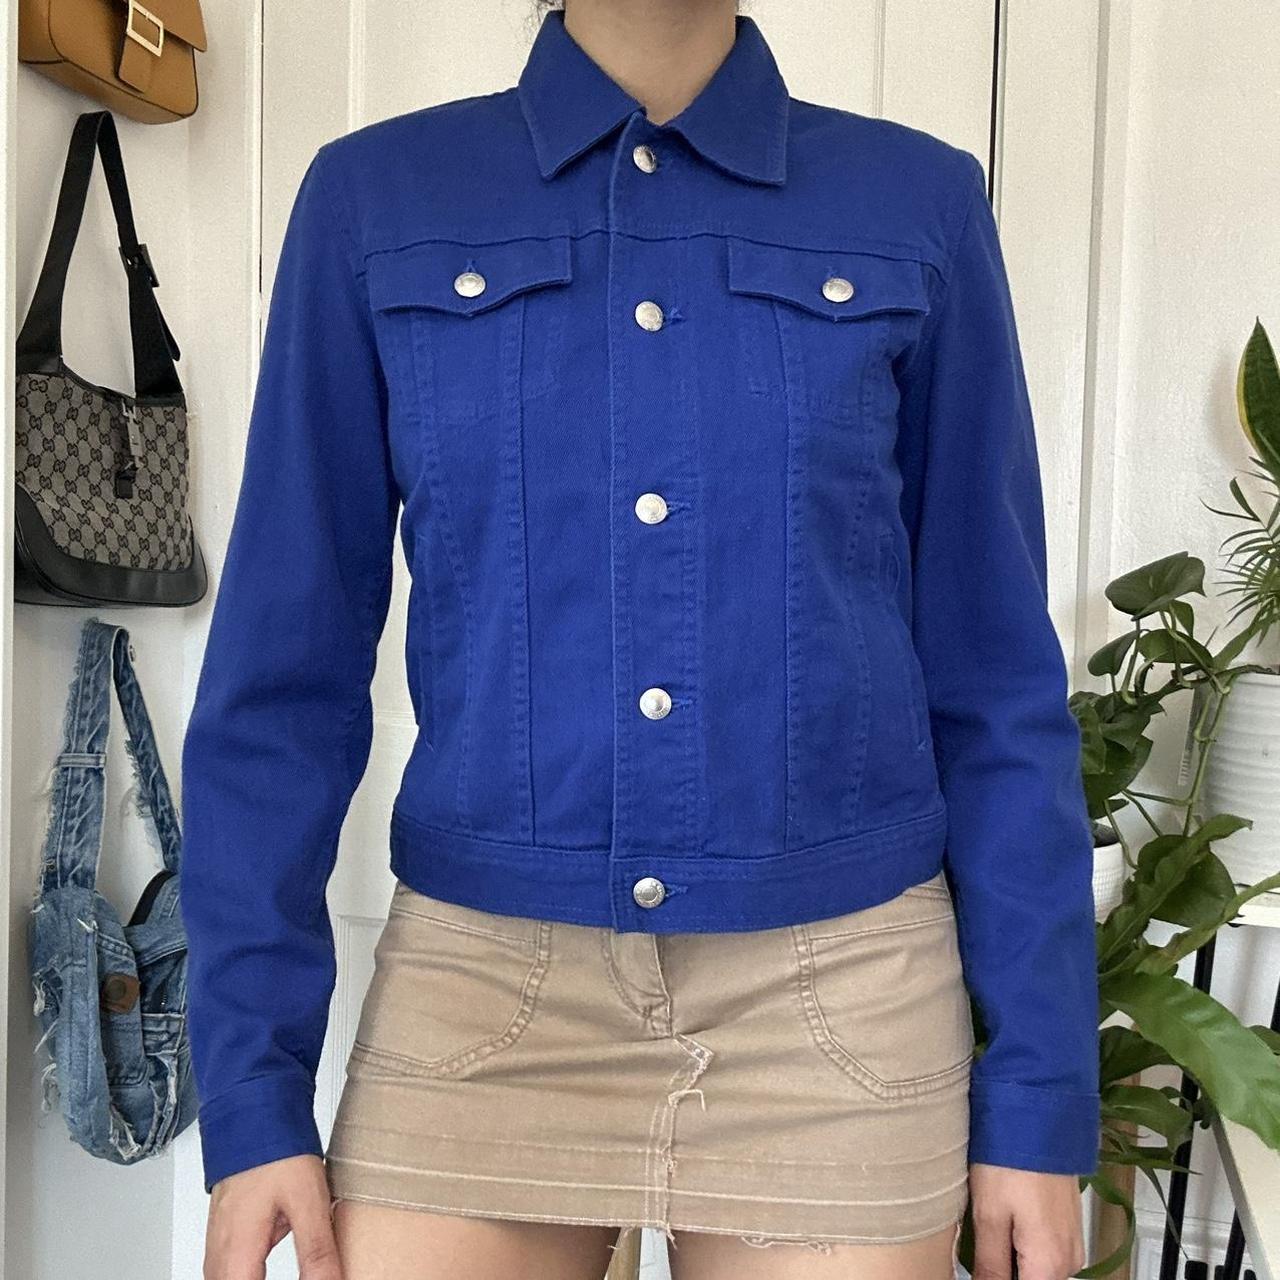 Lauren Ralph Lauren Jacket Women XL Blue Quilted - Depop